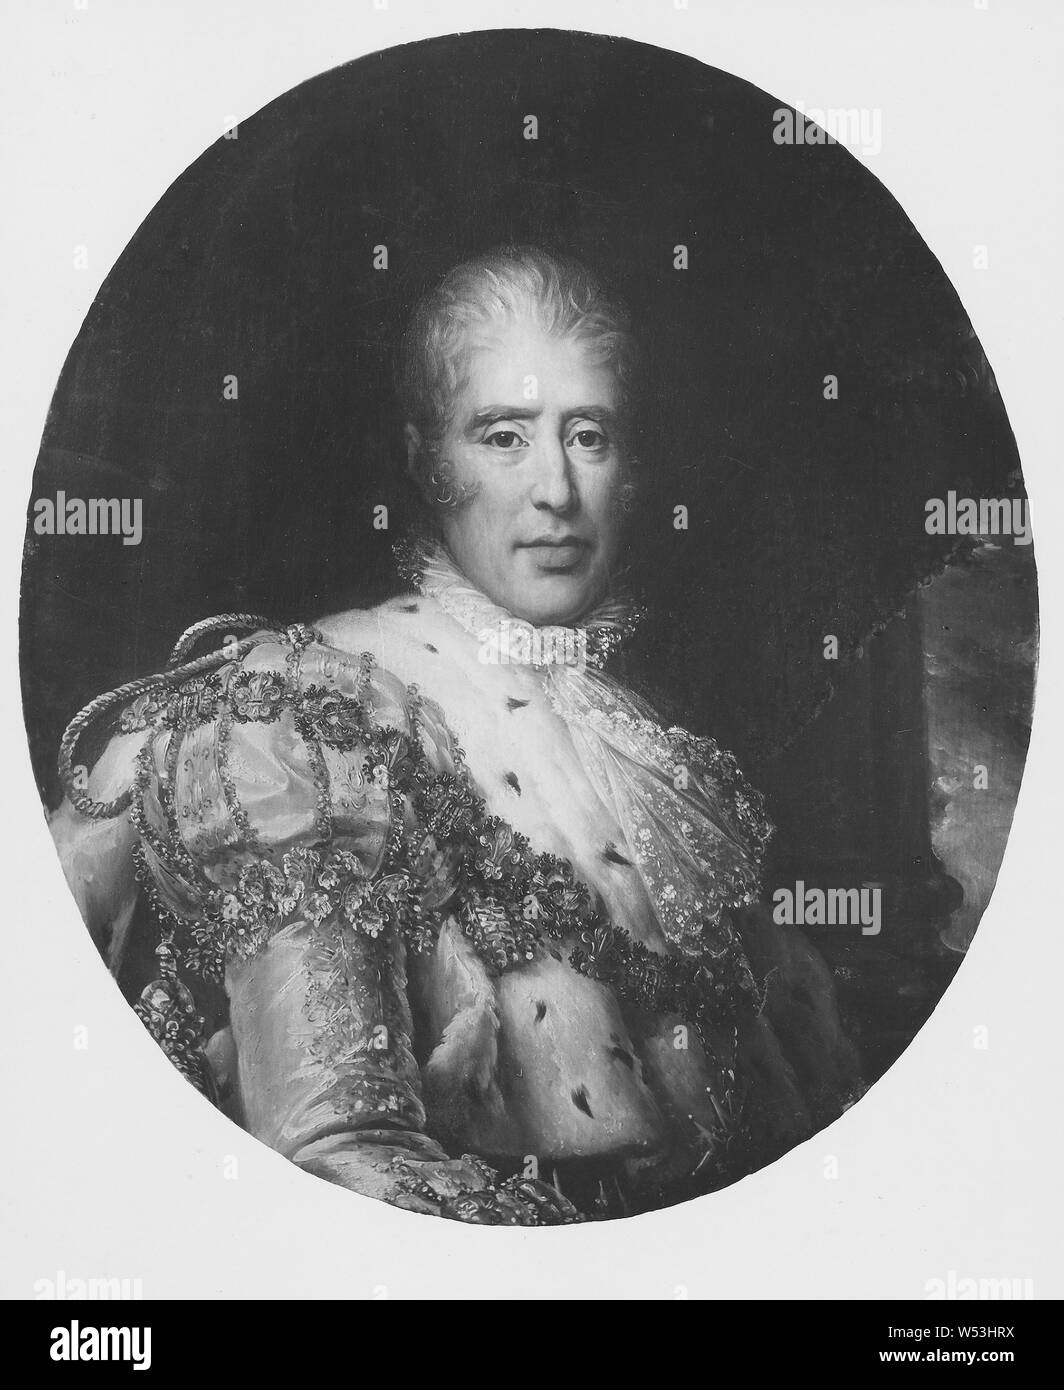 Zum Francois Gerard, König Karl X, Karl X, 1757-1836, König von Frankreich, Malerei, Portrait, Charles X von Frankreich, Öl auf Leinwand, Höhe zurückzuführen, 85 cm (33,4 Zoll), Breite 72 cm (28,3 Zoll) Stockfoto